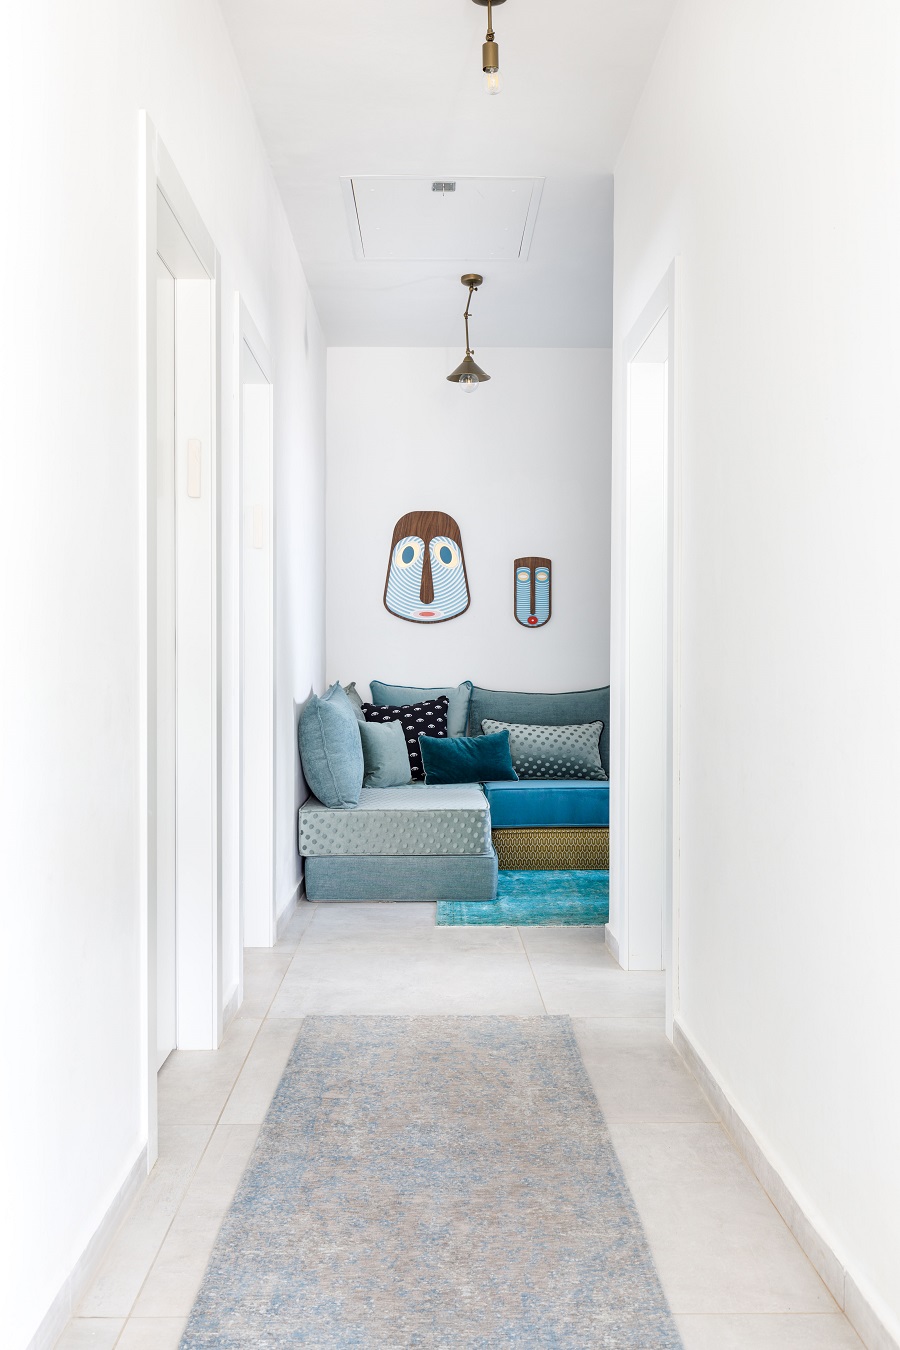 חדר משפחה עיצוב לימור אורן צילום אורית ארנון